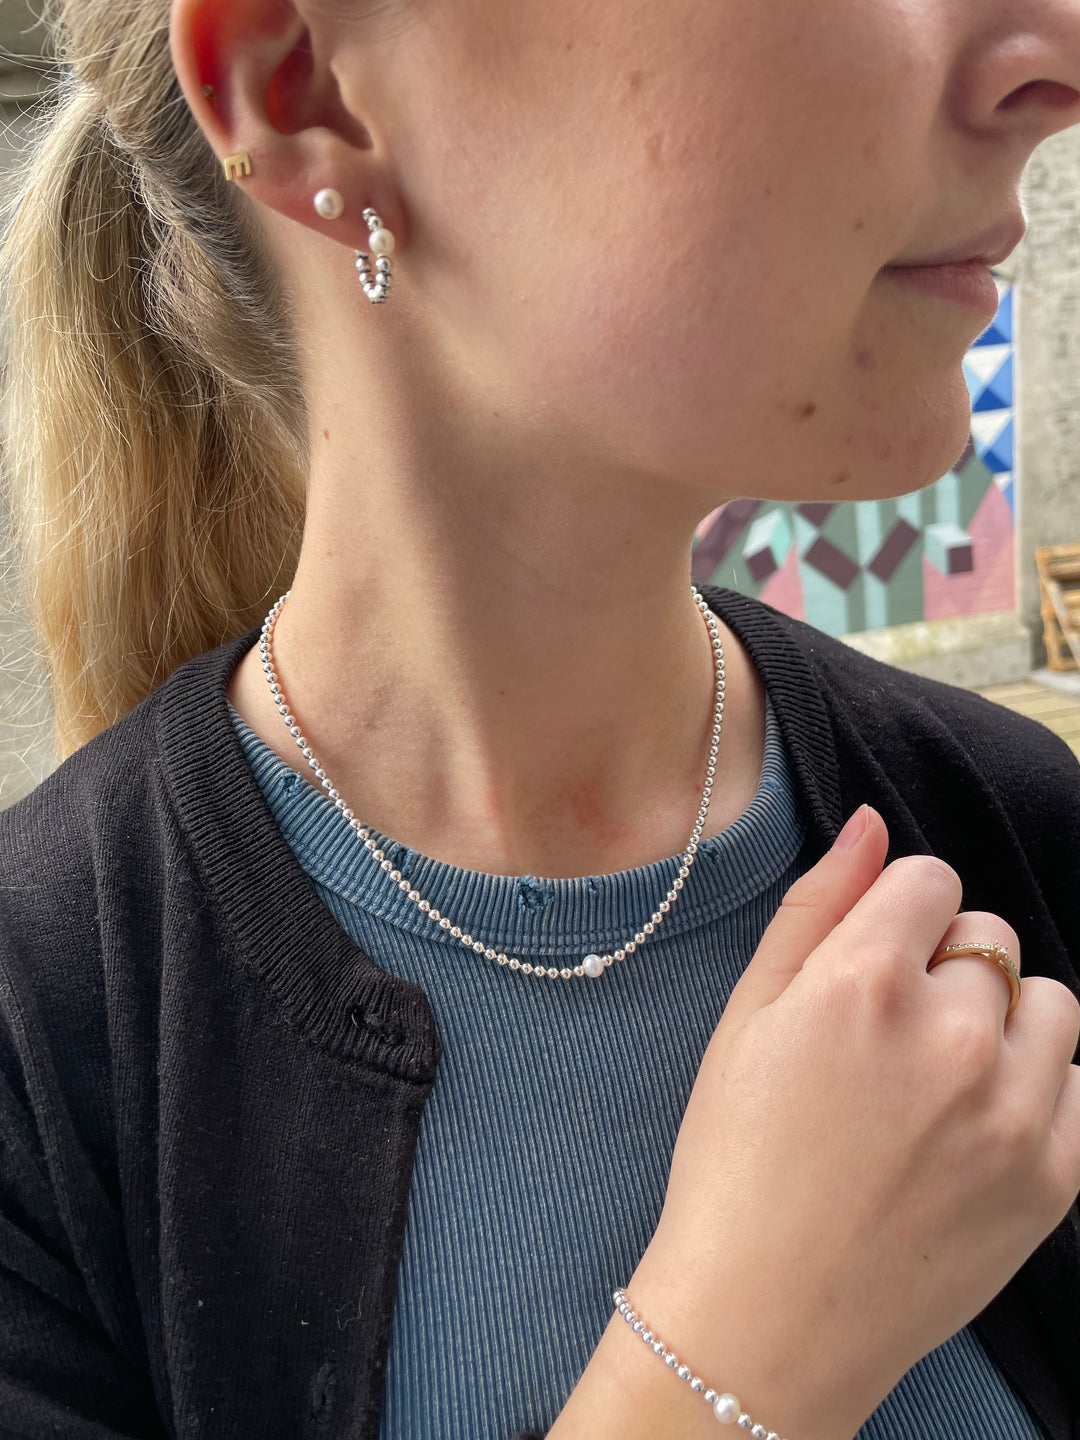 Pandora - Kugle halskæde i sølv med ferskvands perle - 393176c01-45